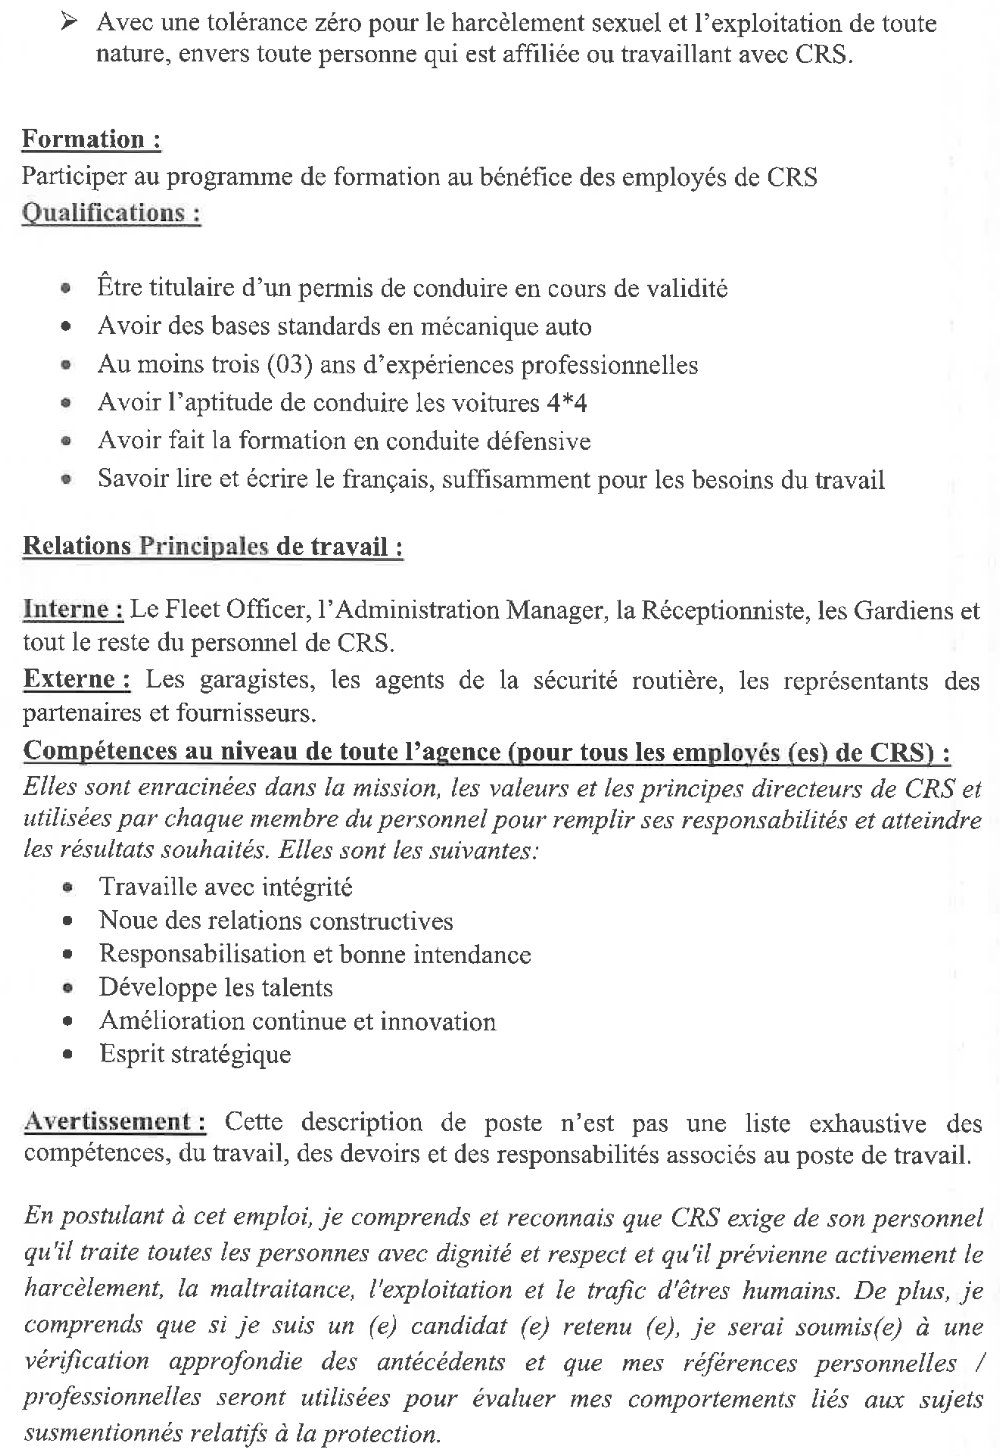 Appel d’offres pour le recrutement de cinq (5) chauffeurs pur CRS Guinée | Page 3